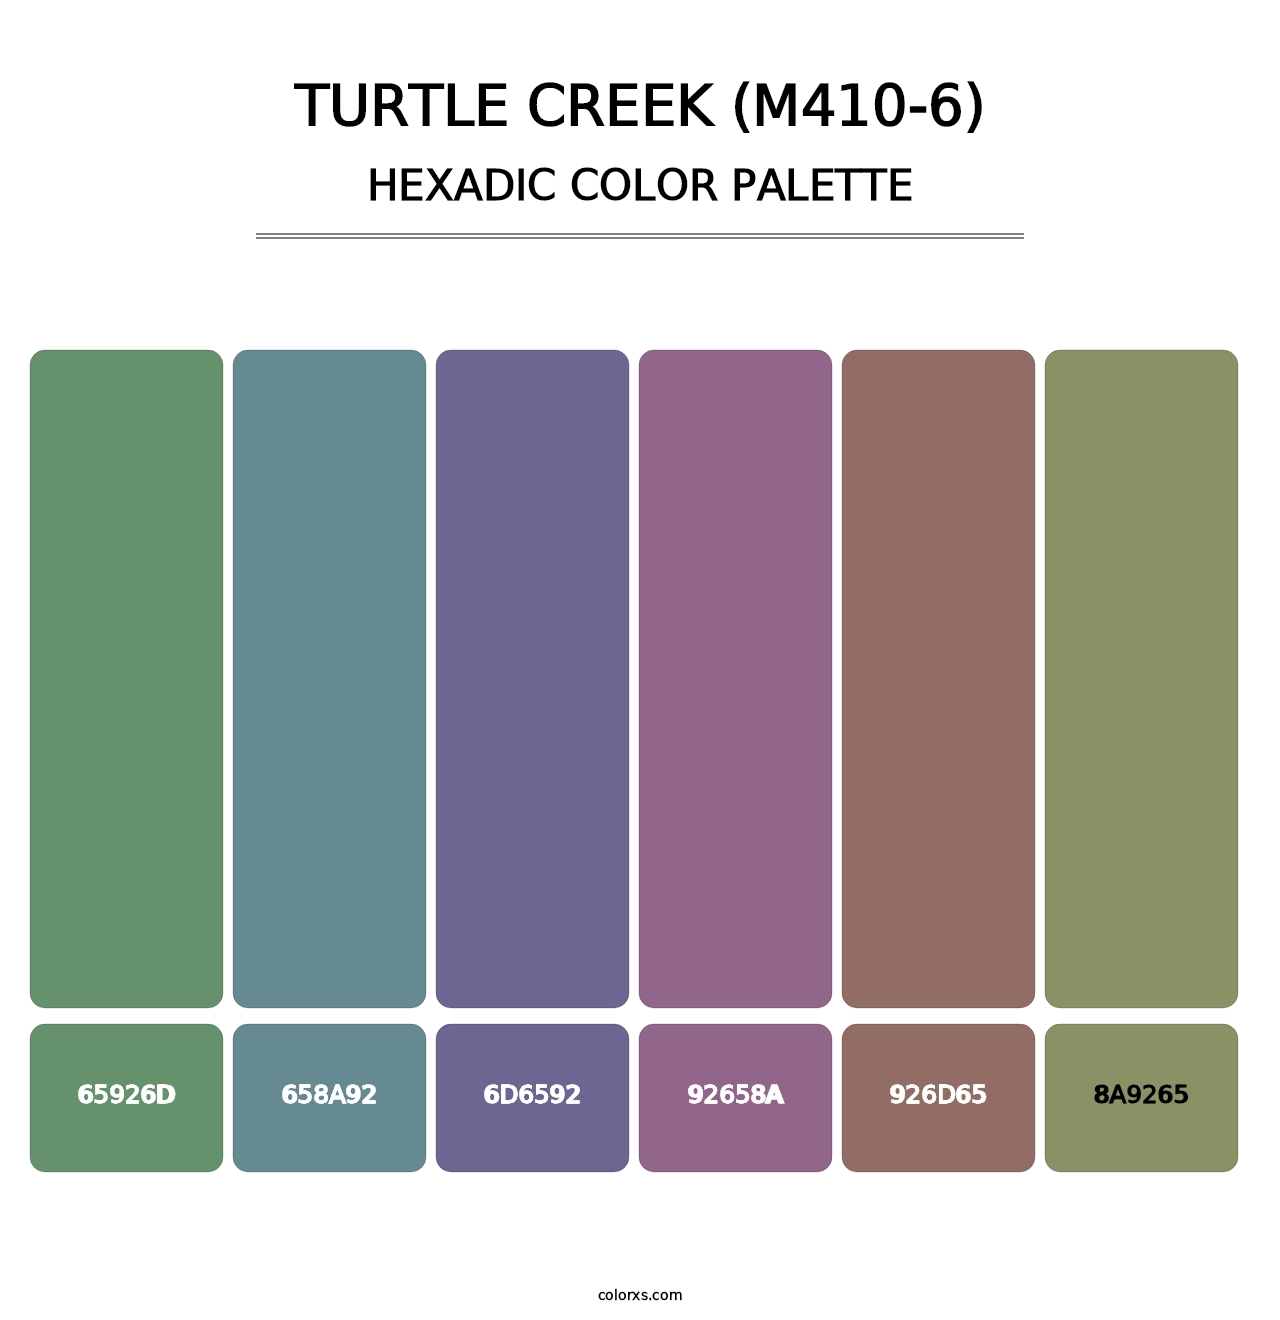 Turtle Creek (M410-6) - Hexadic Color Palette